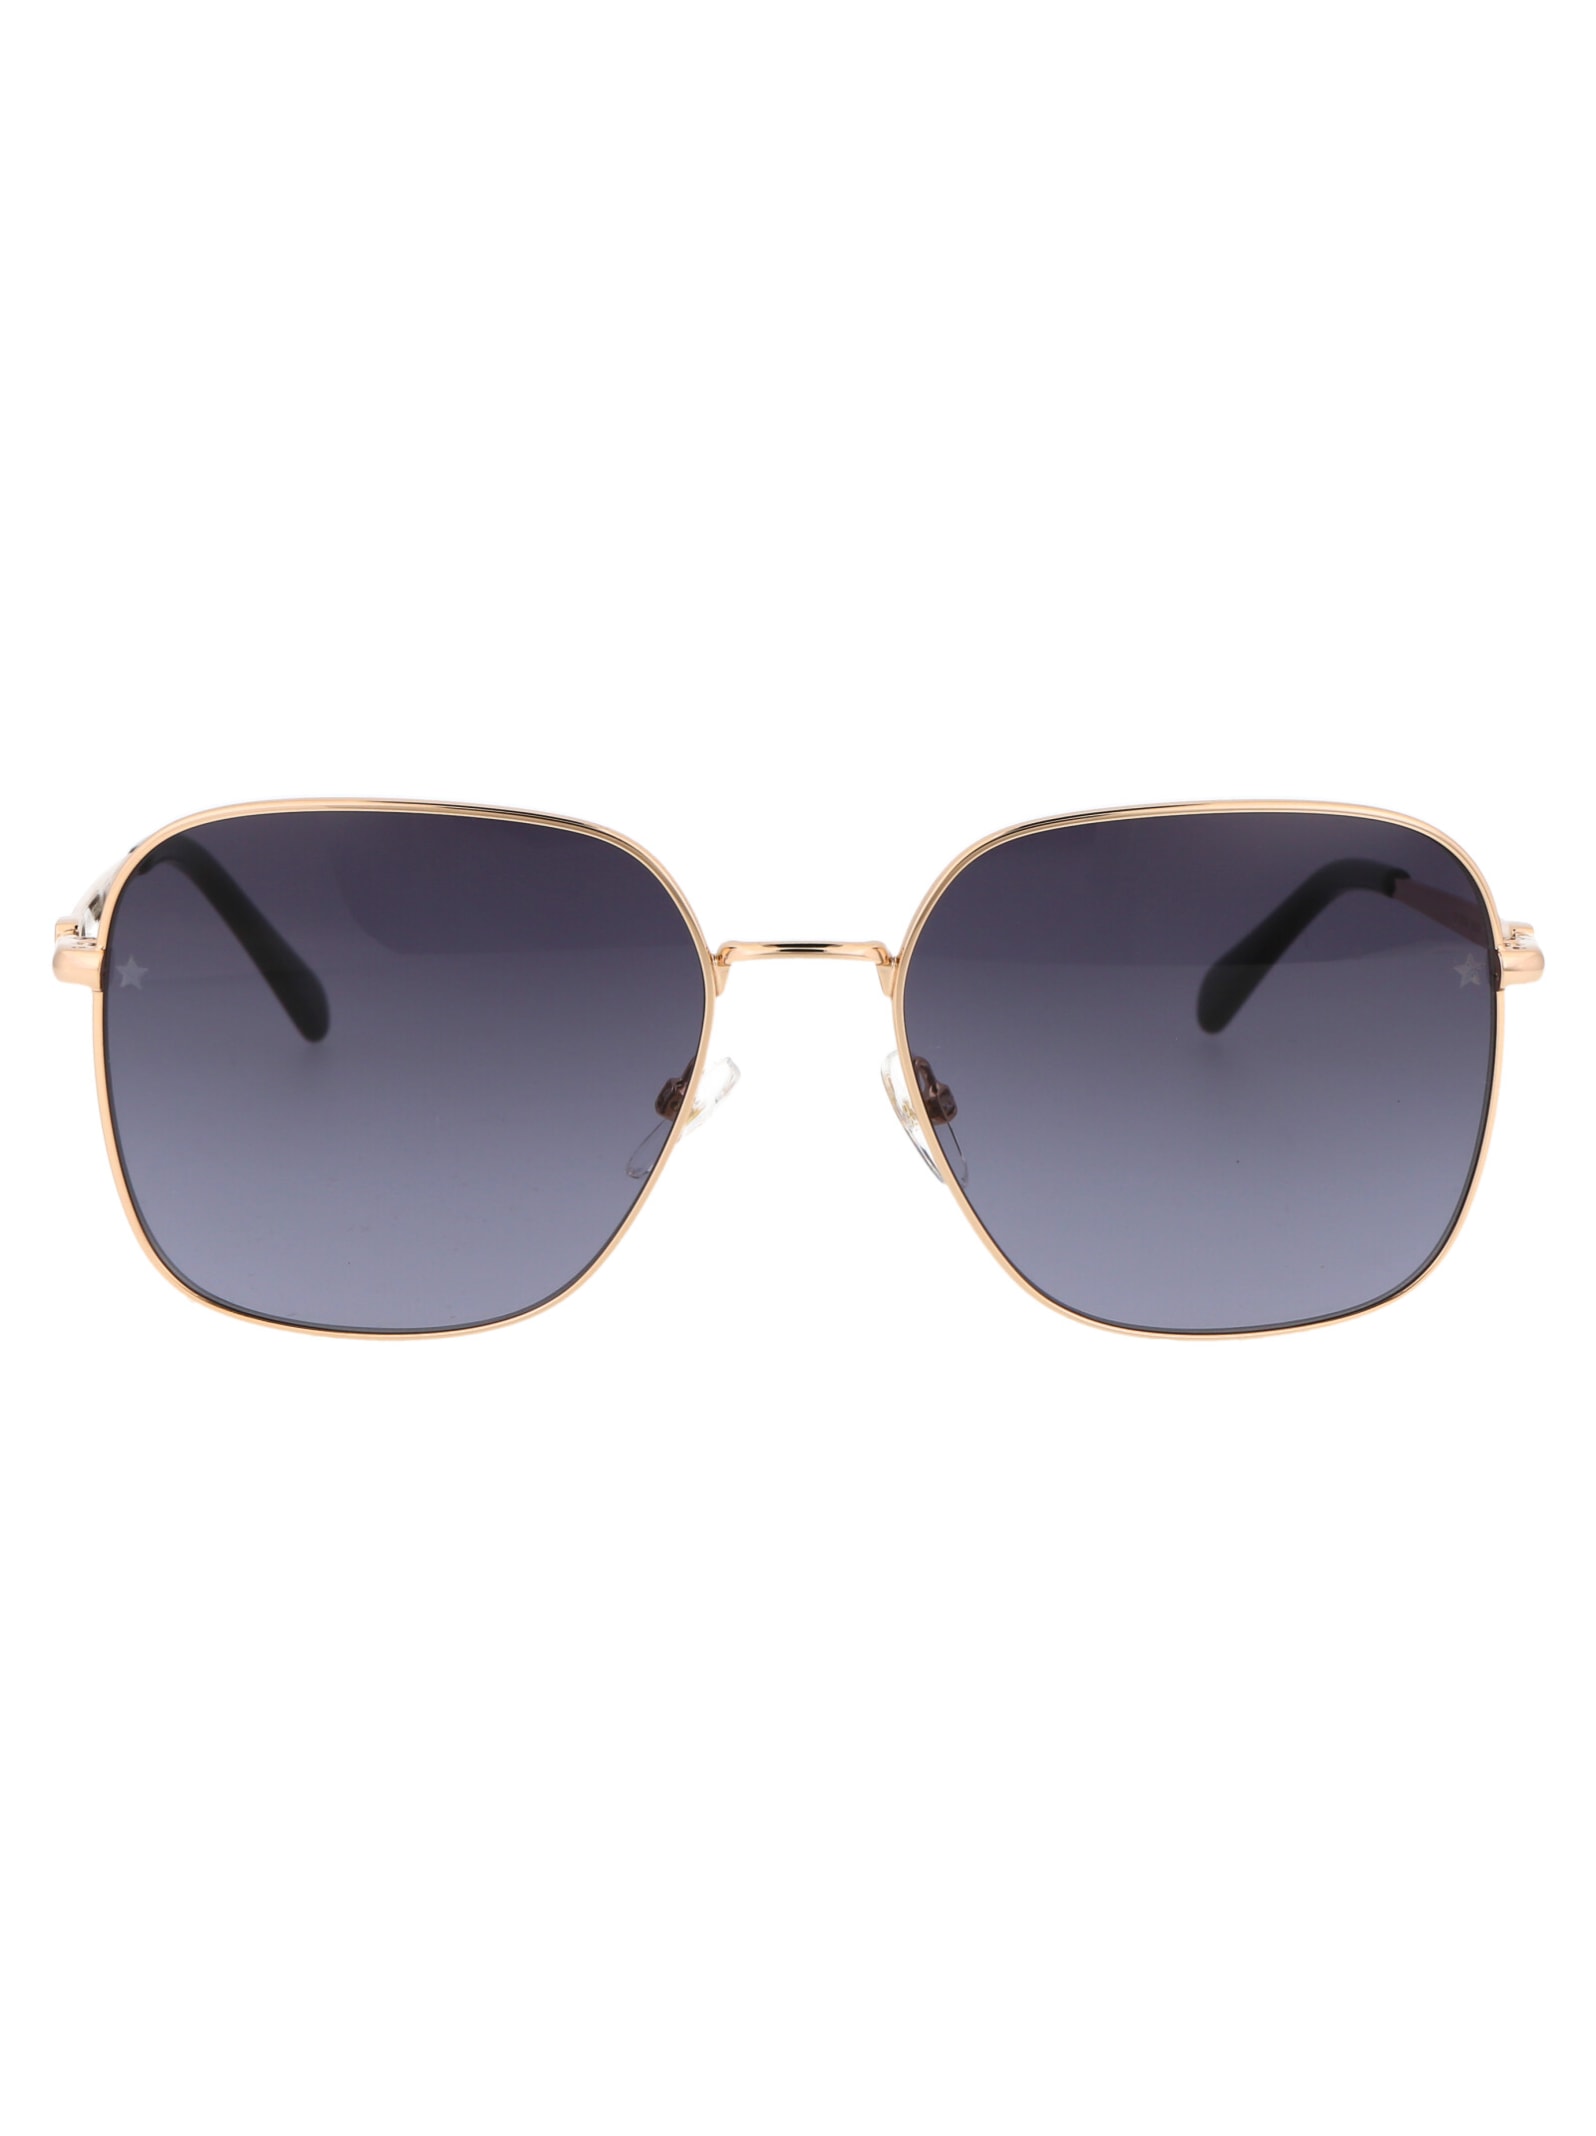 Cf 1003/s Sunglasses